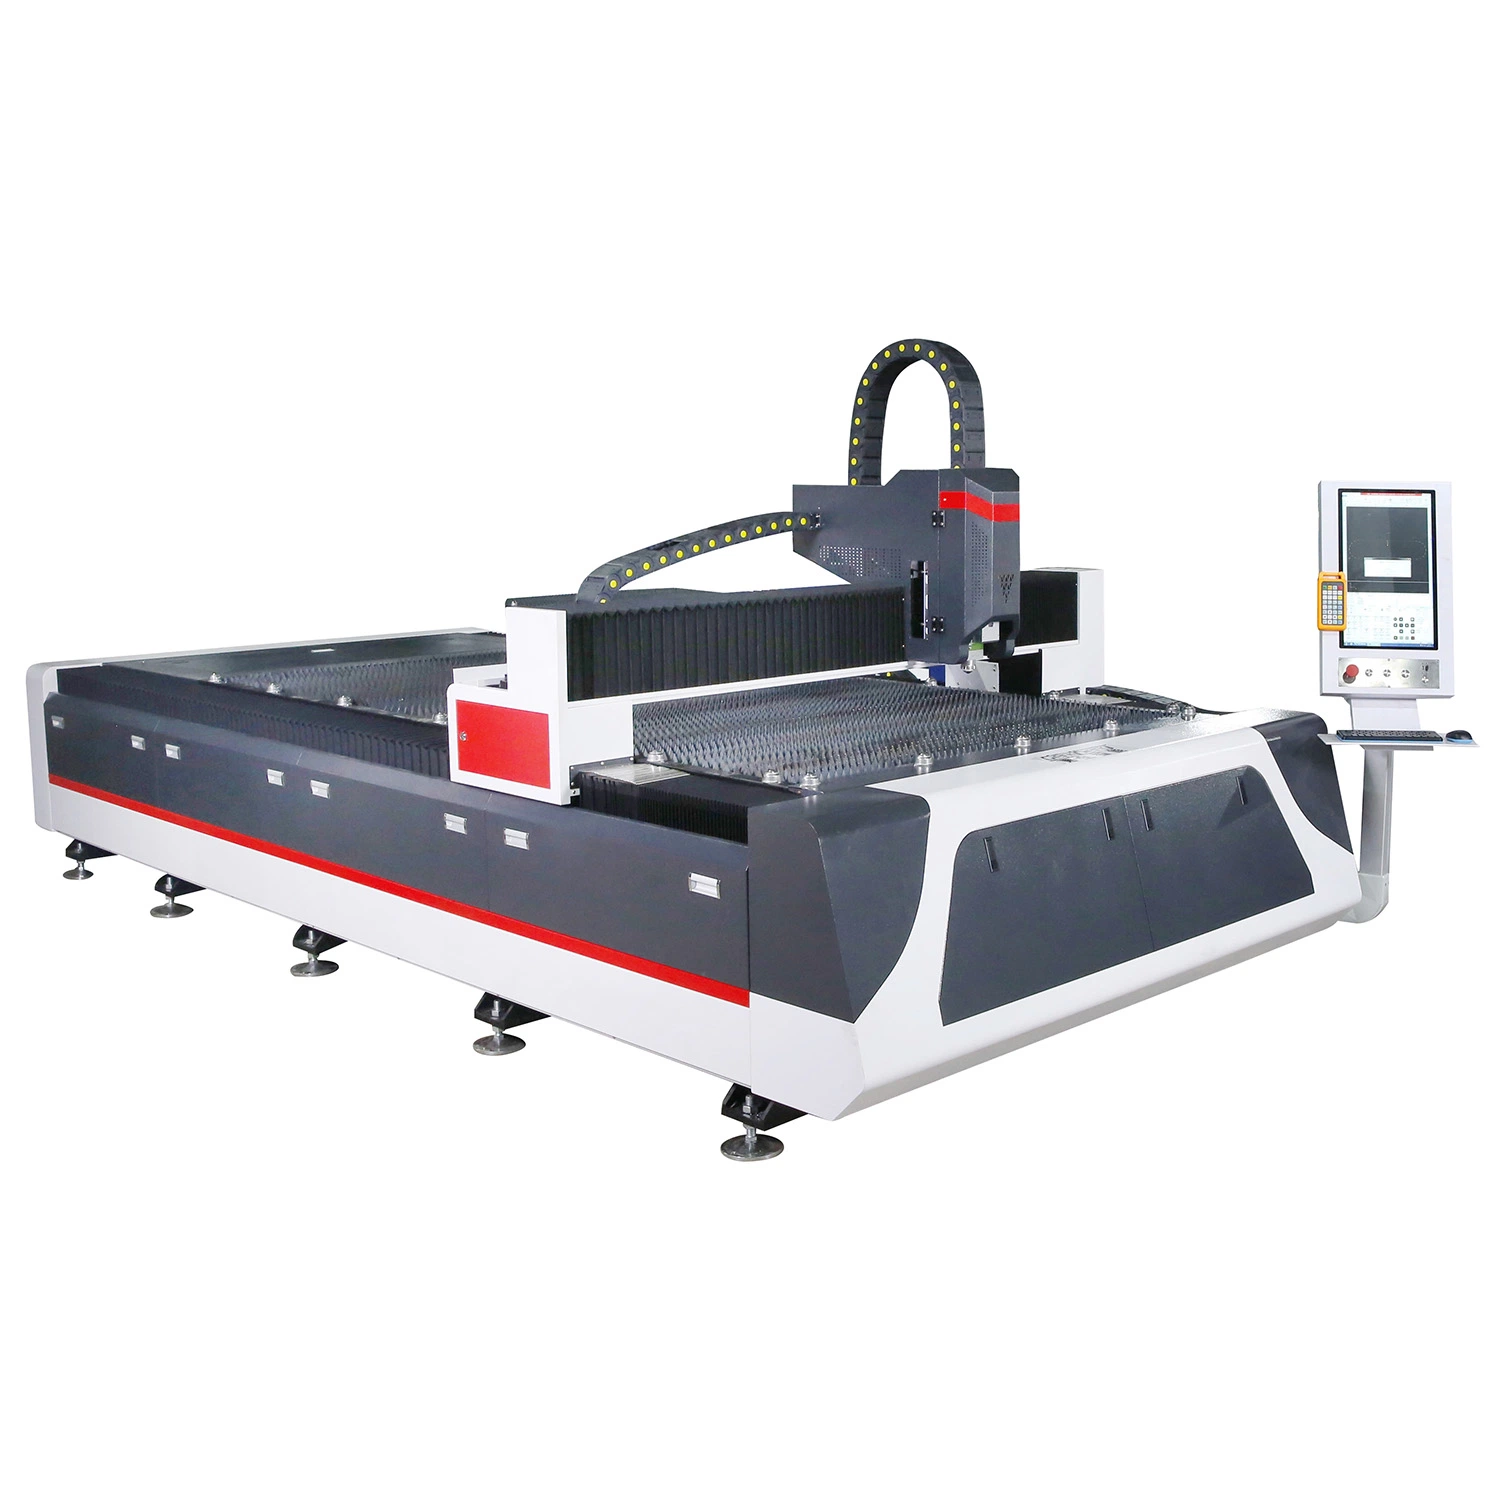 Automobilindustrie 1000W-3000W Metallic Processing Machinery Fiber Laser Cutter Machine